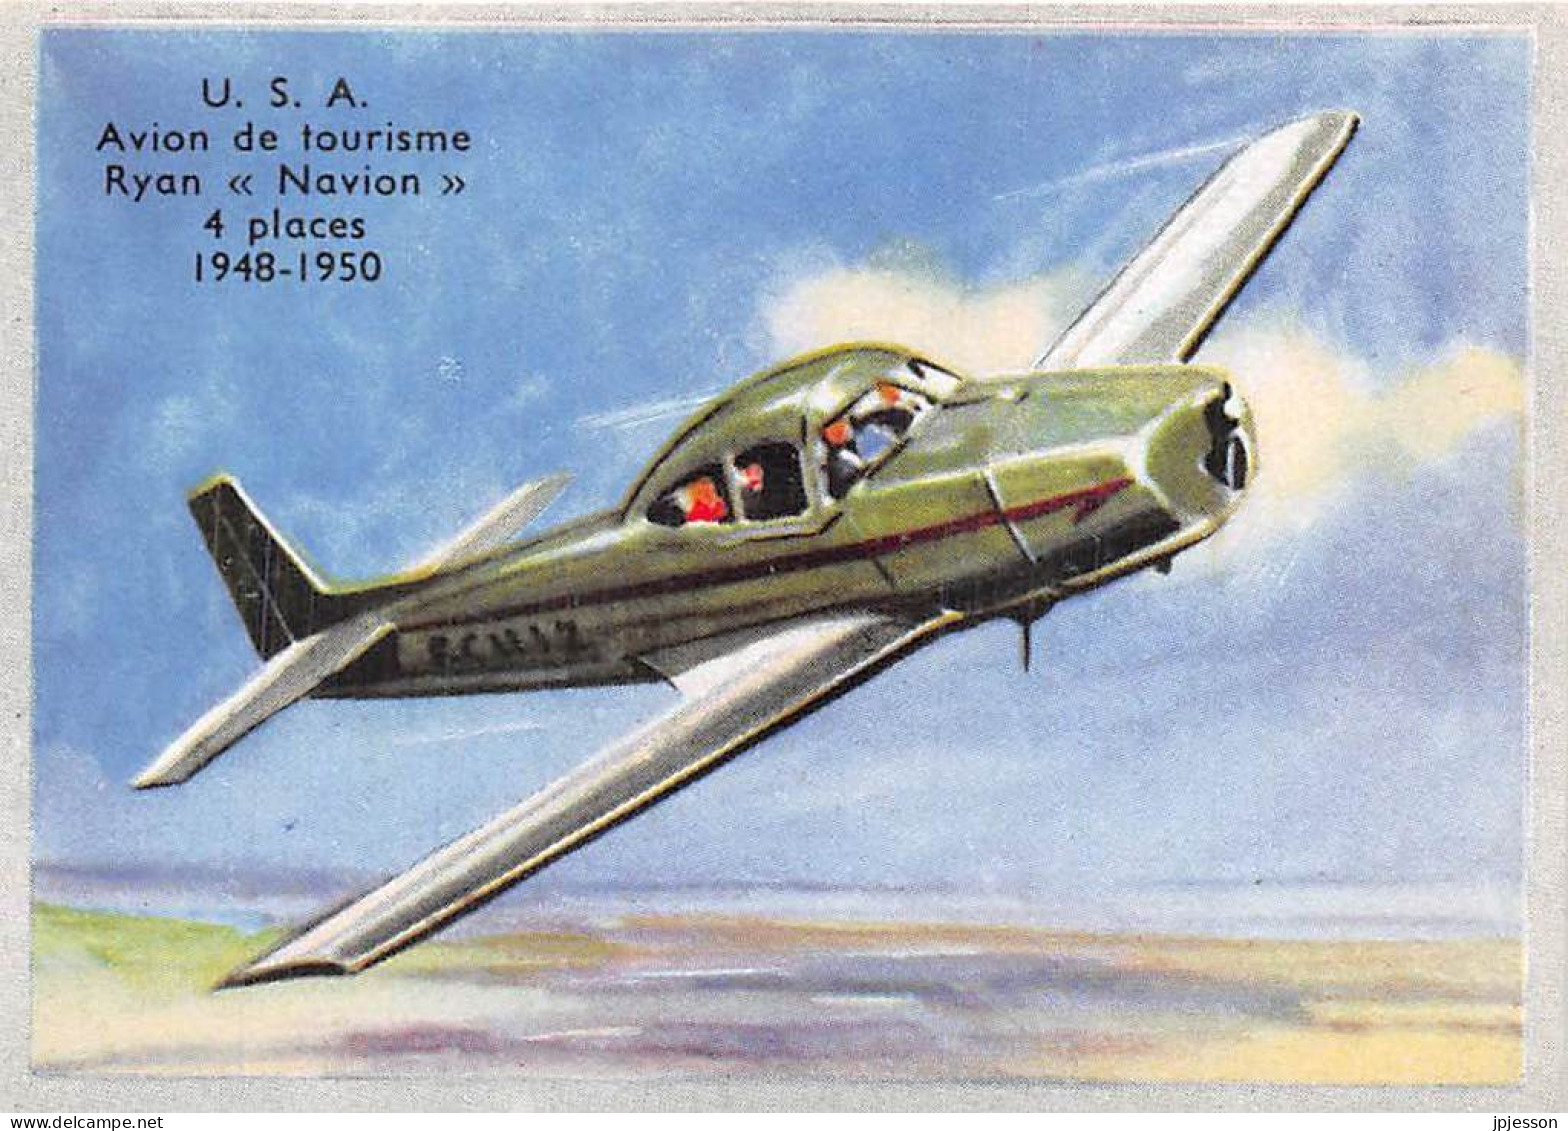 IMAGE - AVIATION - ETATS UNIS - U.S.A. - AVION DE TOURISME RYAN "NAVION" - 4 PLACES 1948 - 1950 - Vliegtuigen